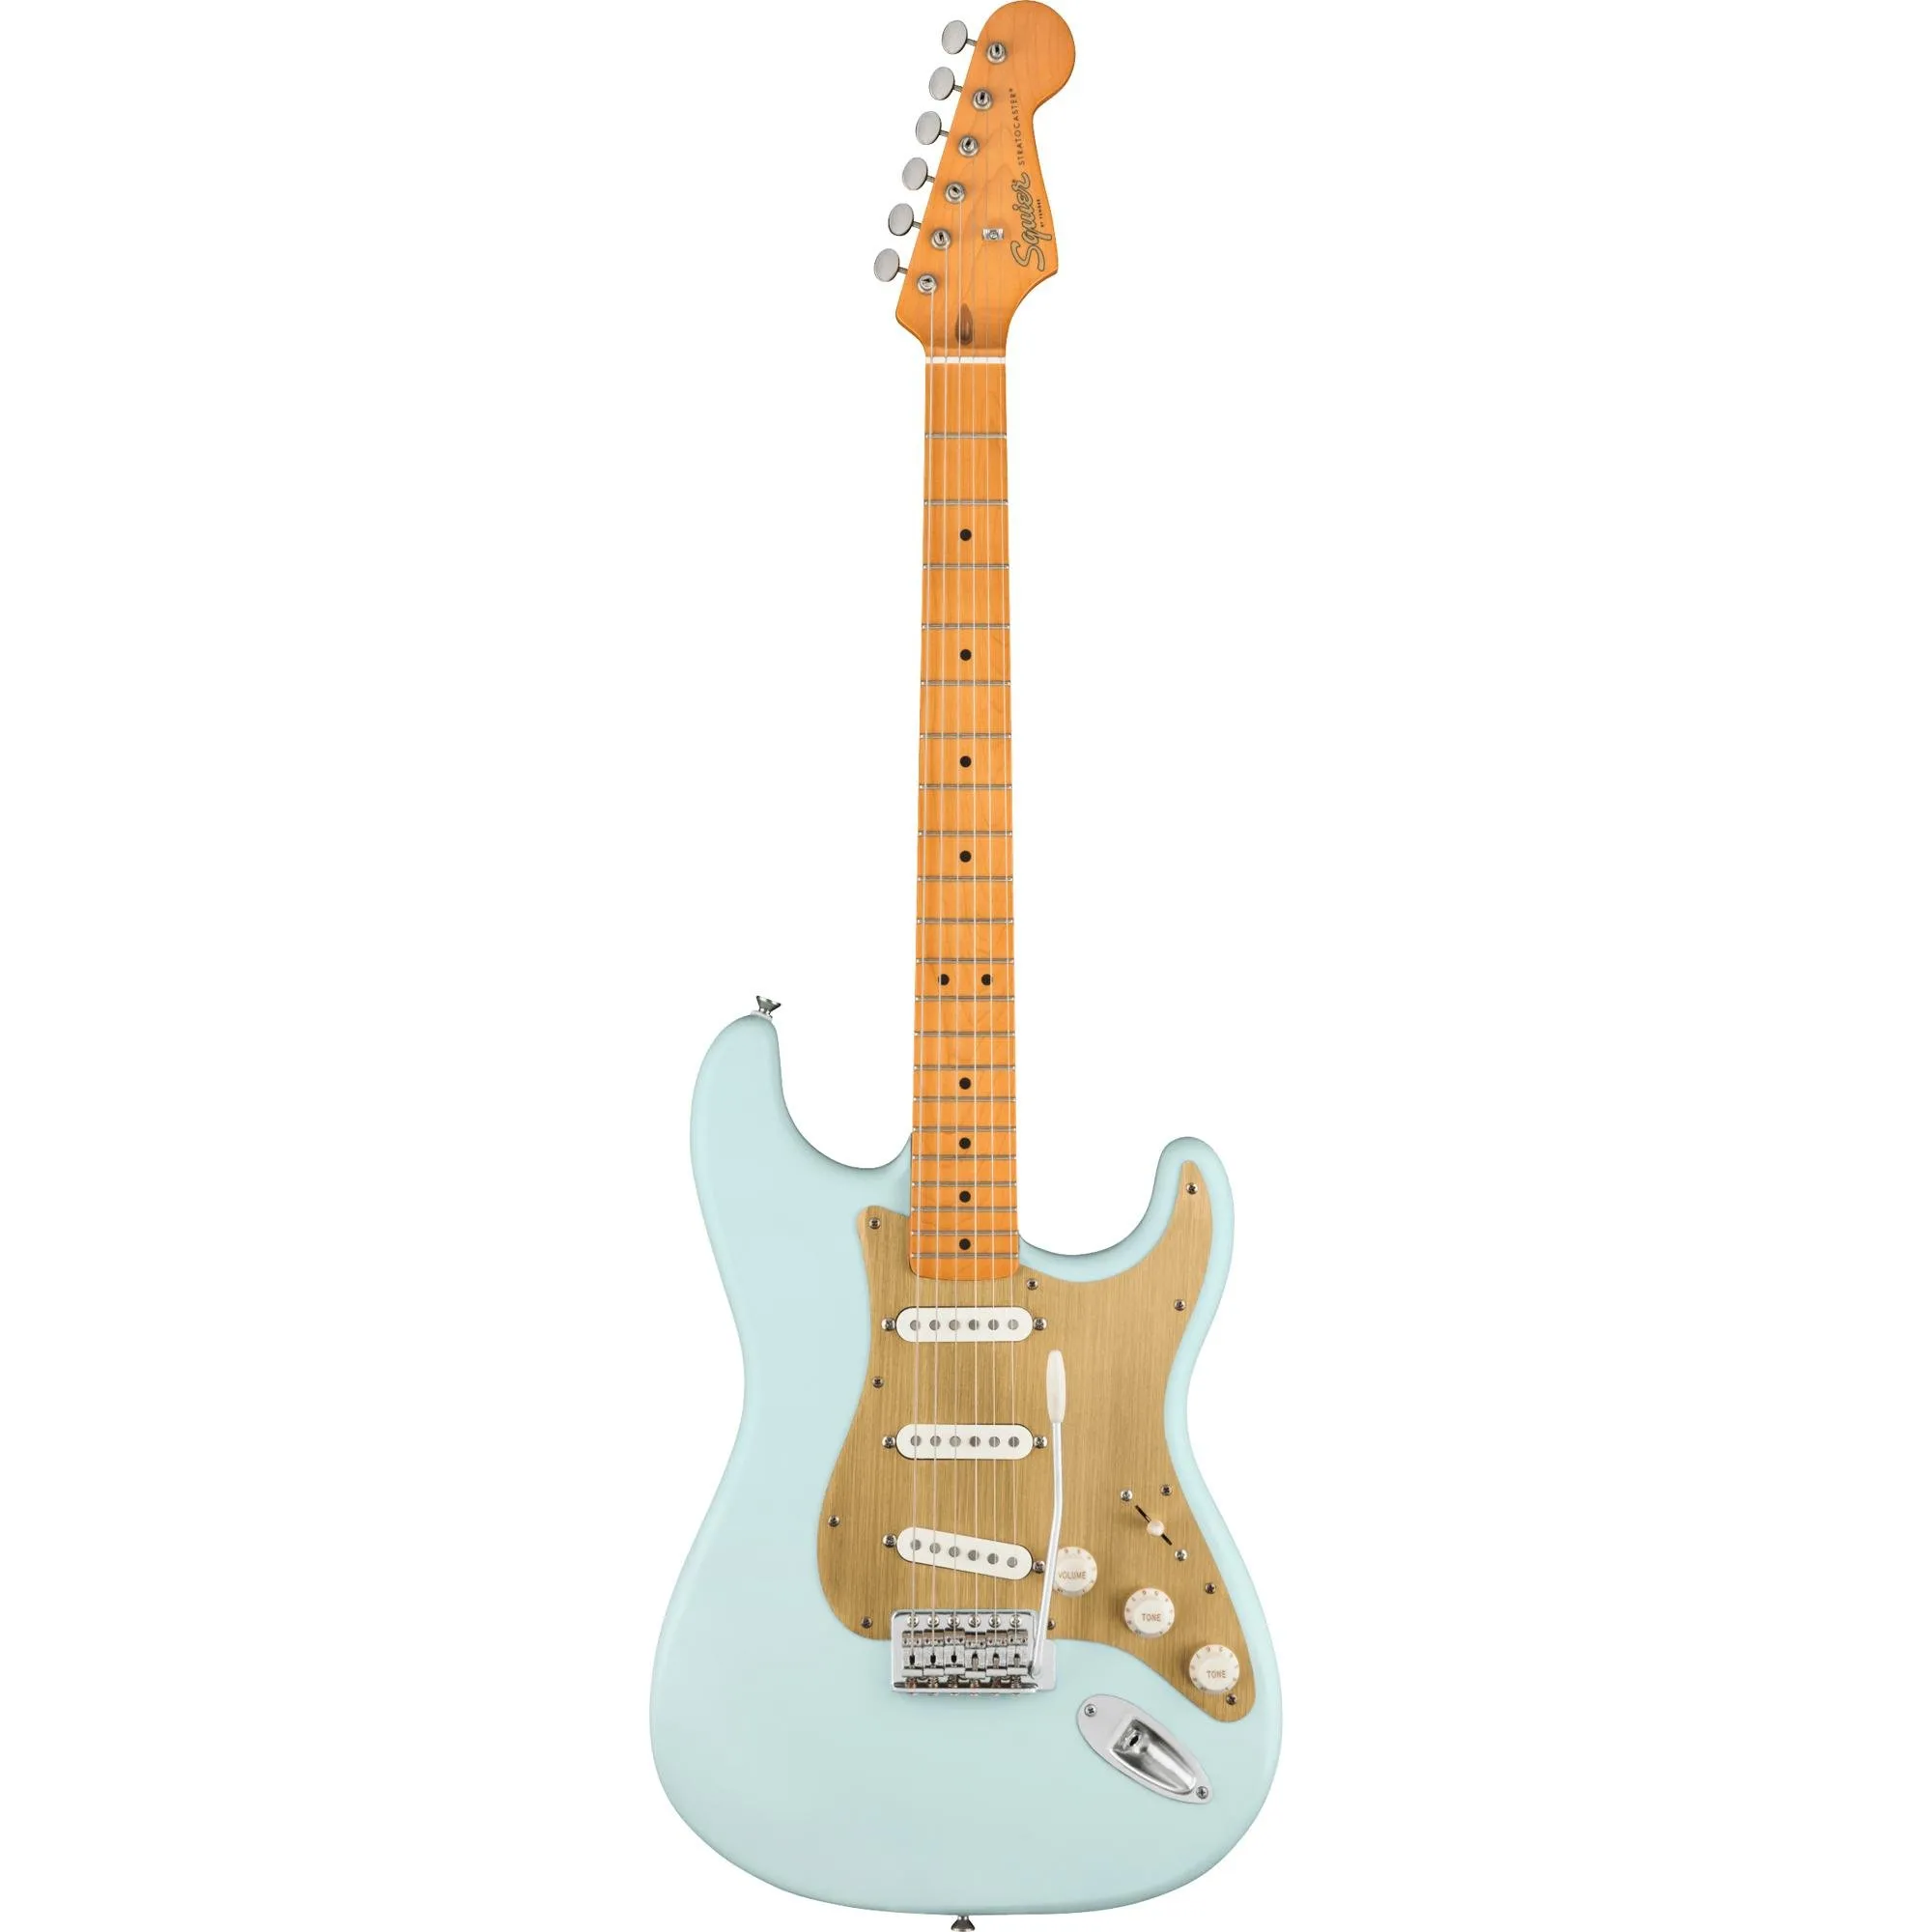 Guitarra Squier Stratocaster Vintage Cetim Sonic Blue por 4.299,99 à vista no boleto/pix ou parcele em até 12x sem juros. Compre na loja Mundomax!